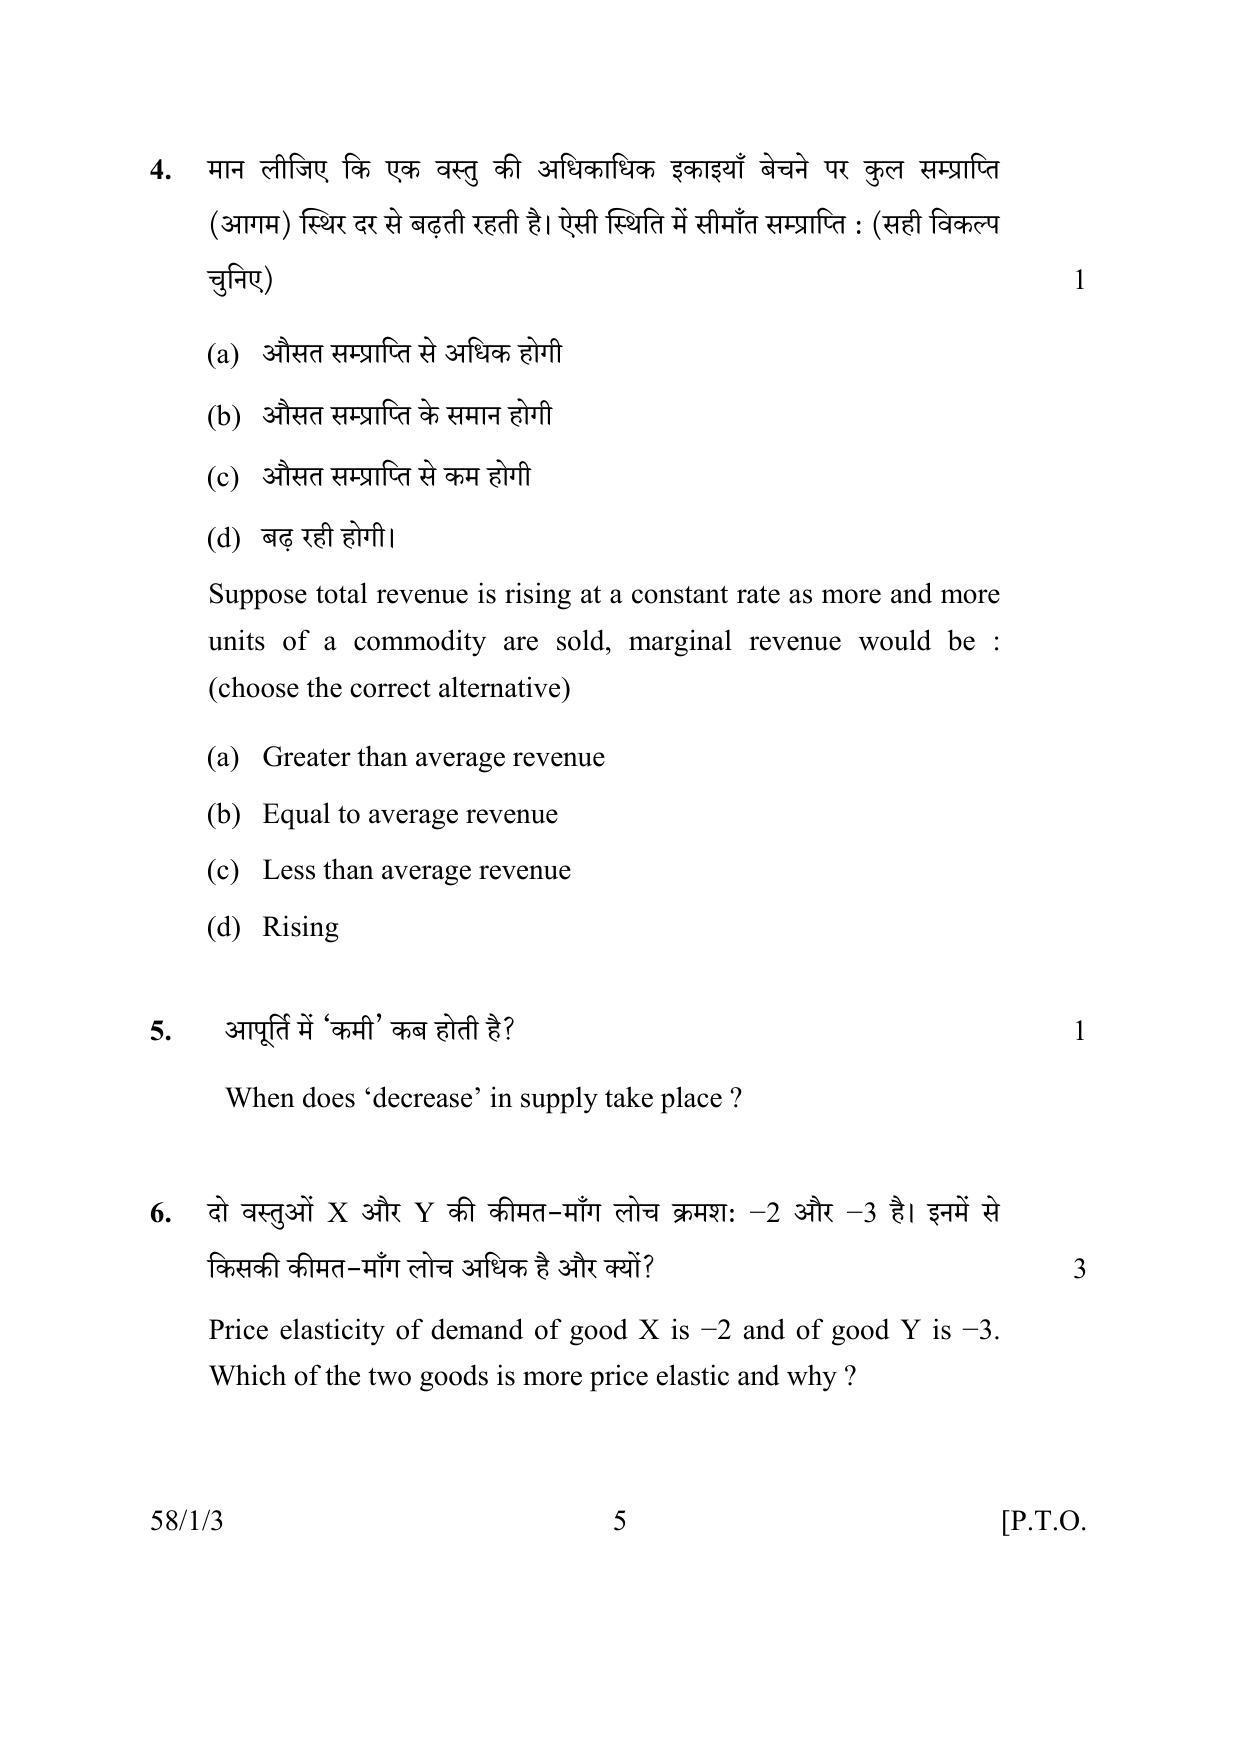 CBSE Class 12 58-1-3 ECONOMICS 2016 Question Paper - Page 5